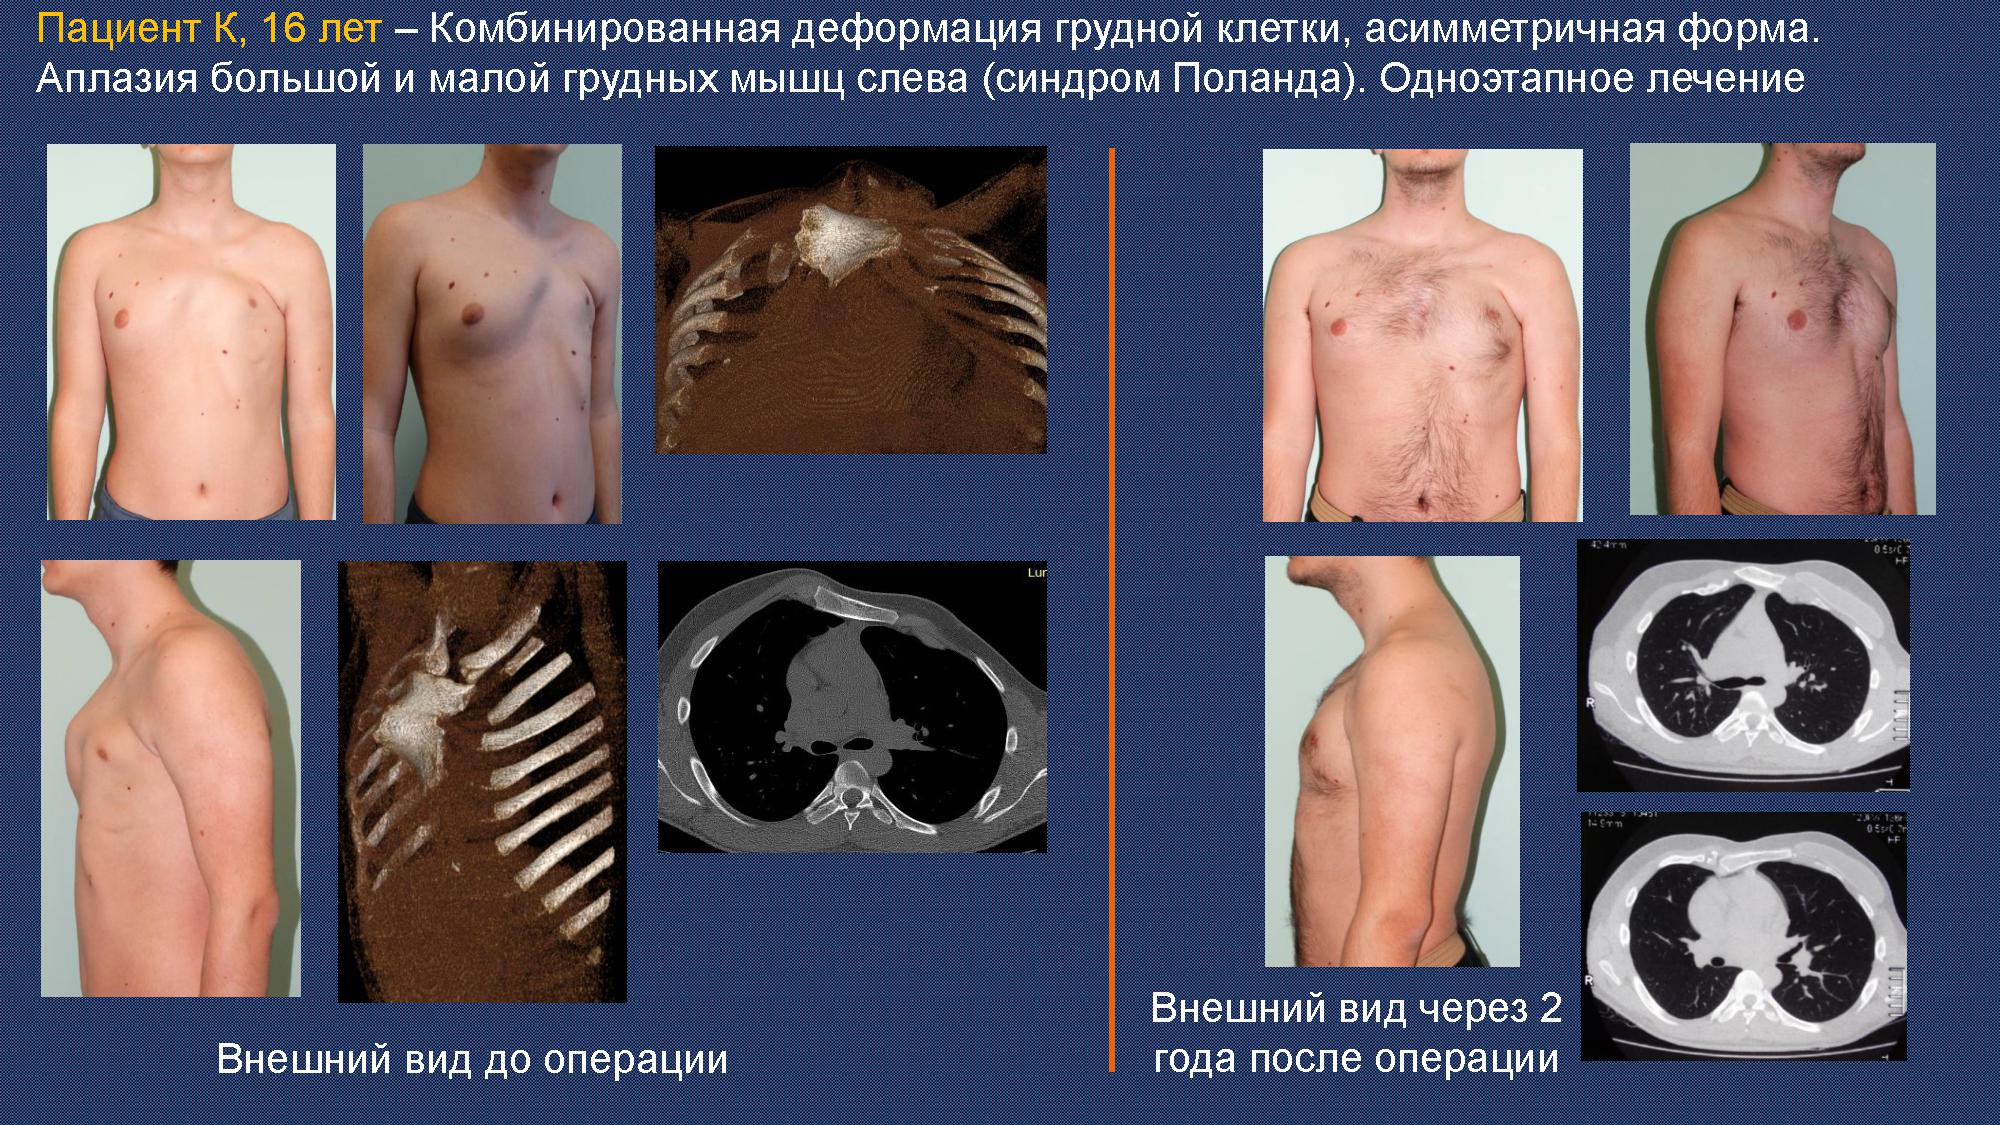 Хирургия при комбинированной деформации груди Хирургия воронкообразной деформации грудной клетки